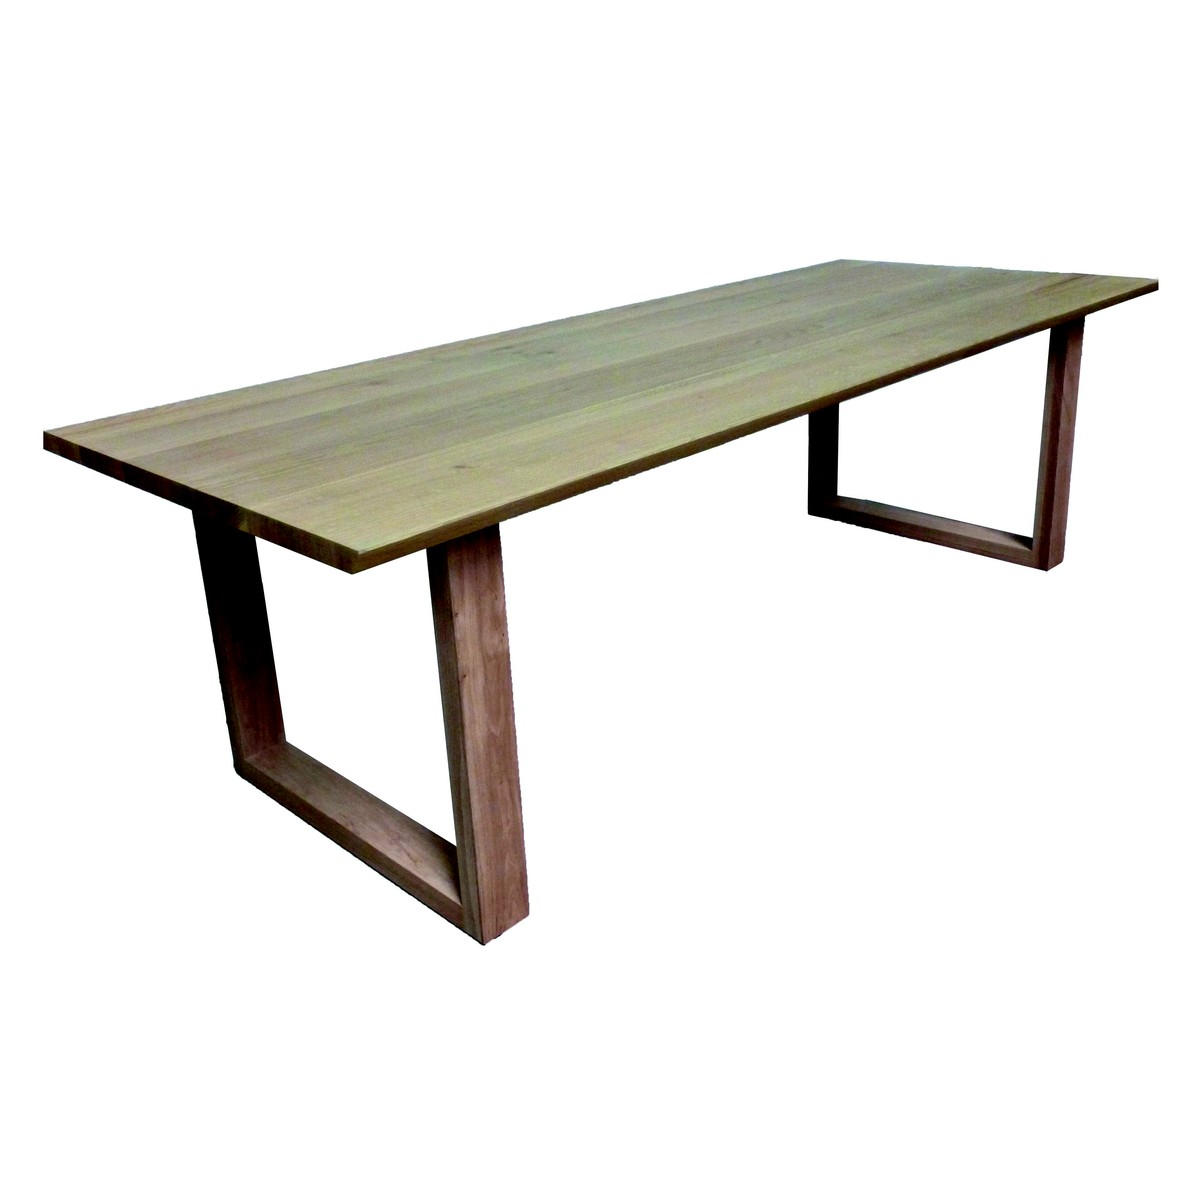   Table basse Carl Droit rectangulaire  130x70x40cm